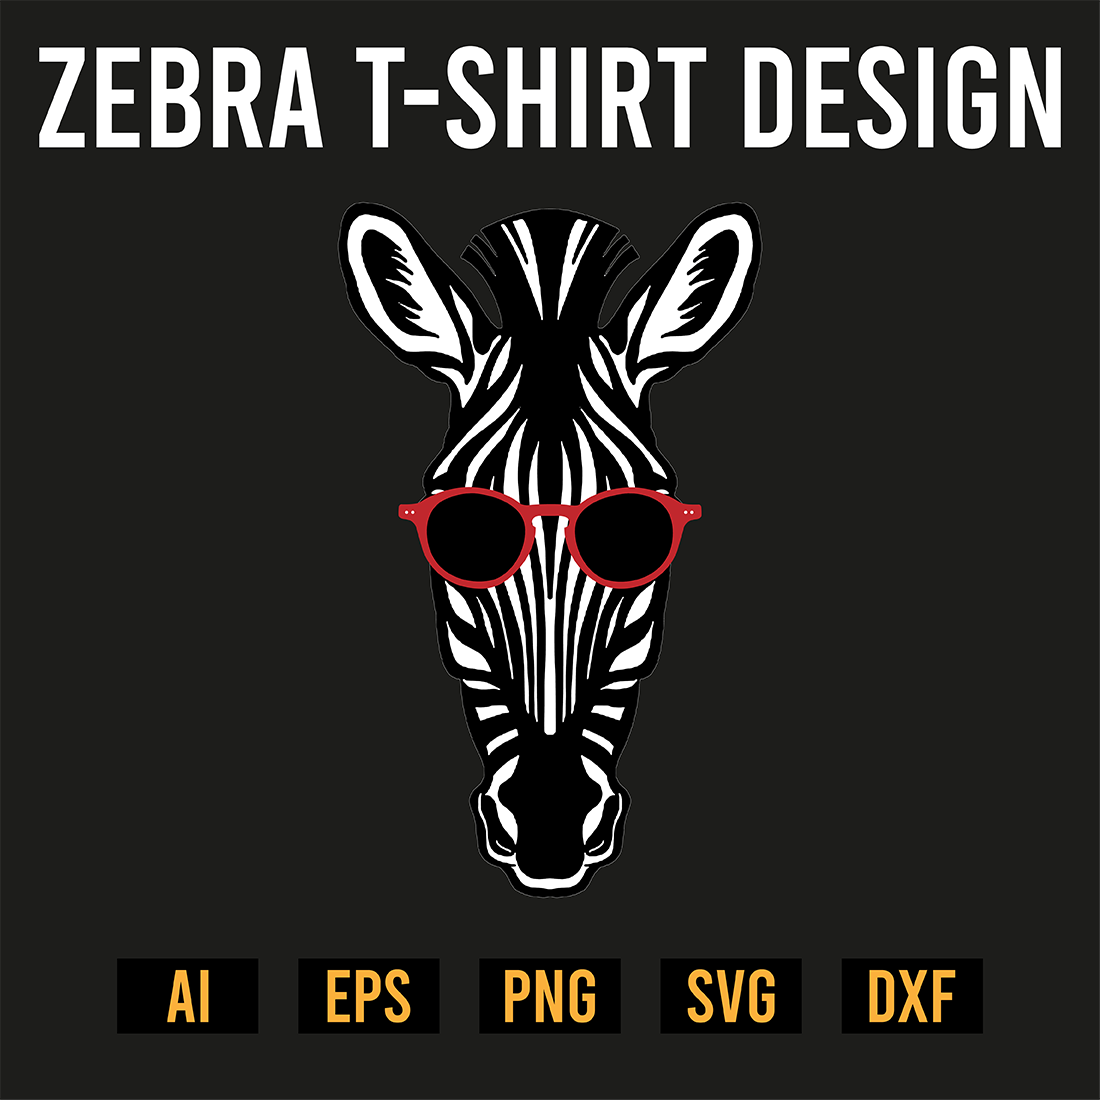 Zebra T-Shirt Design preview image.